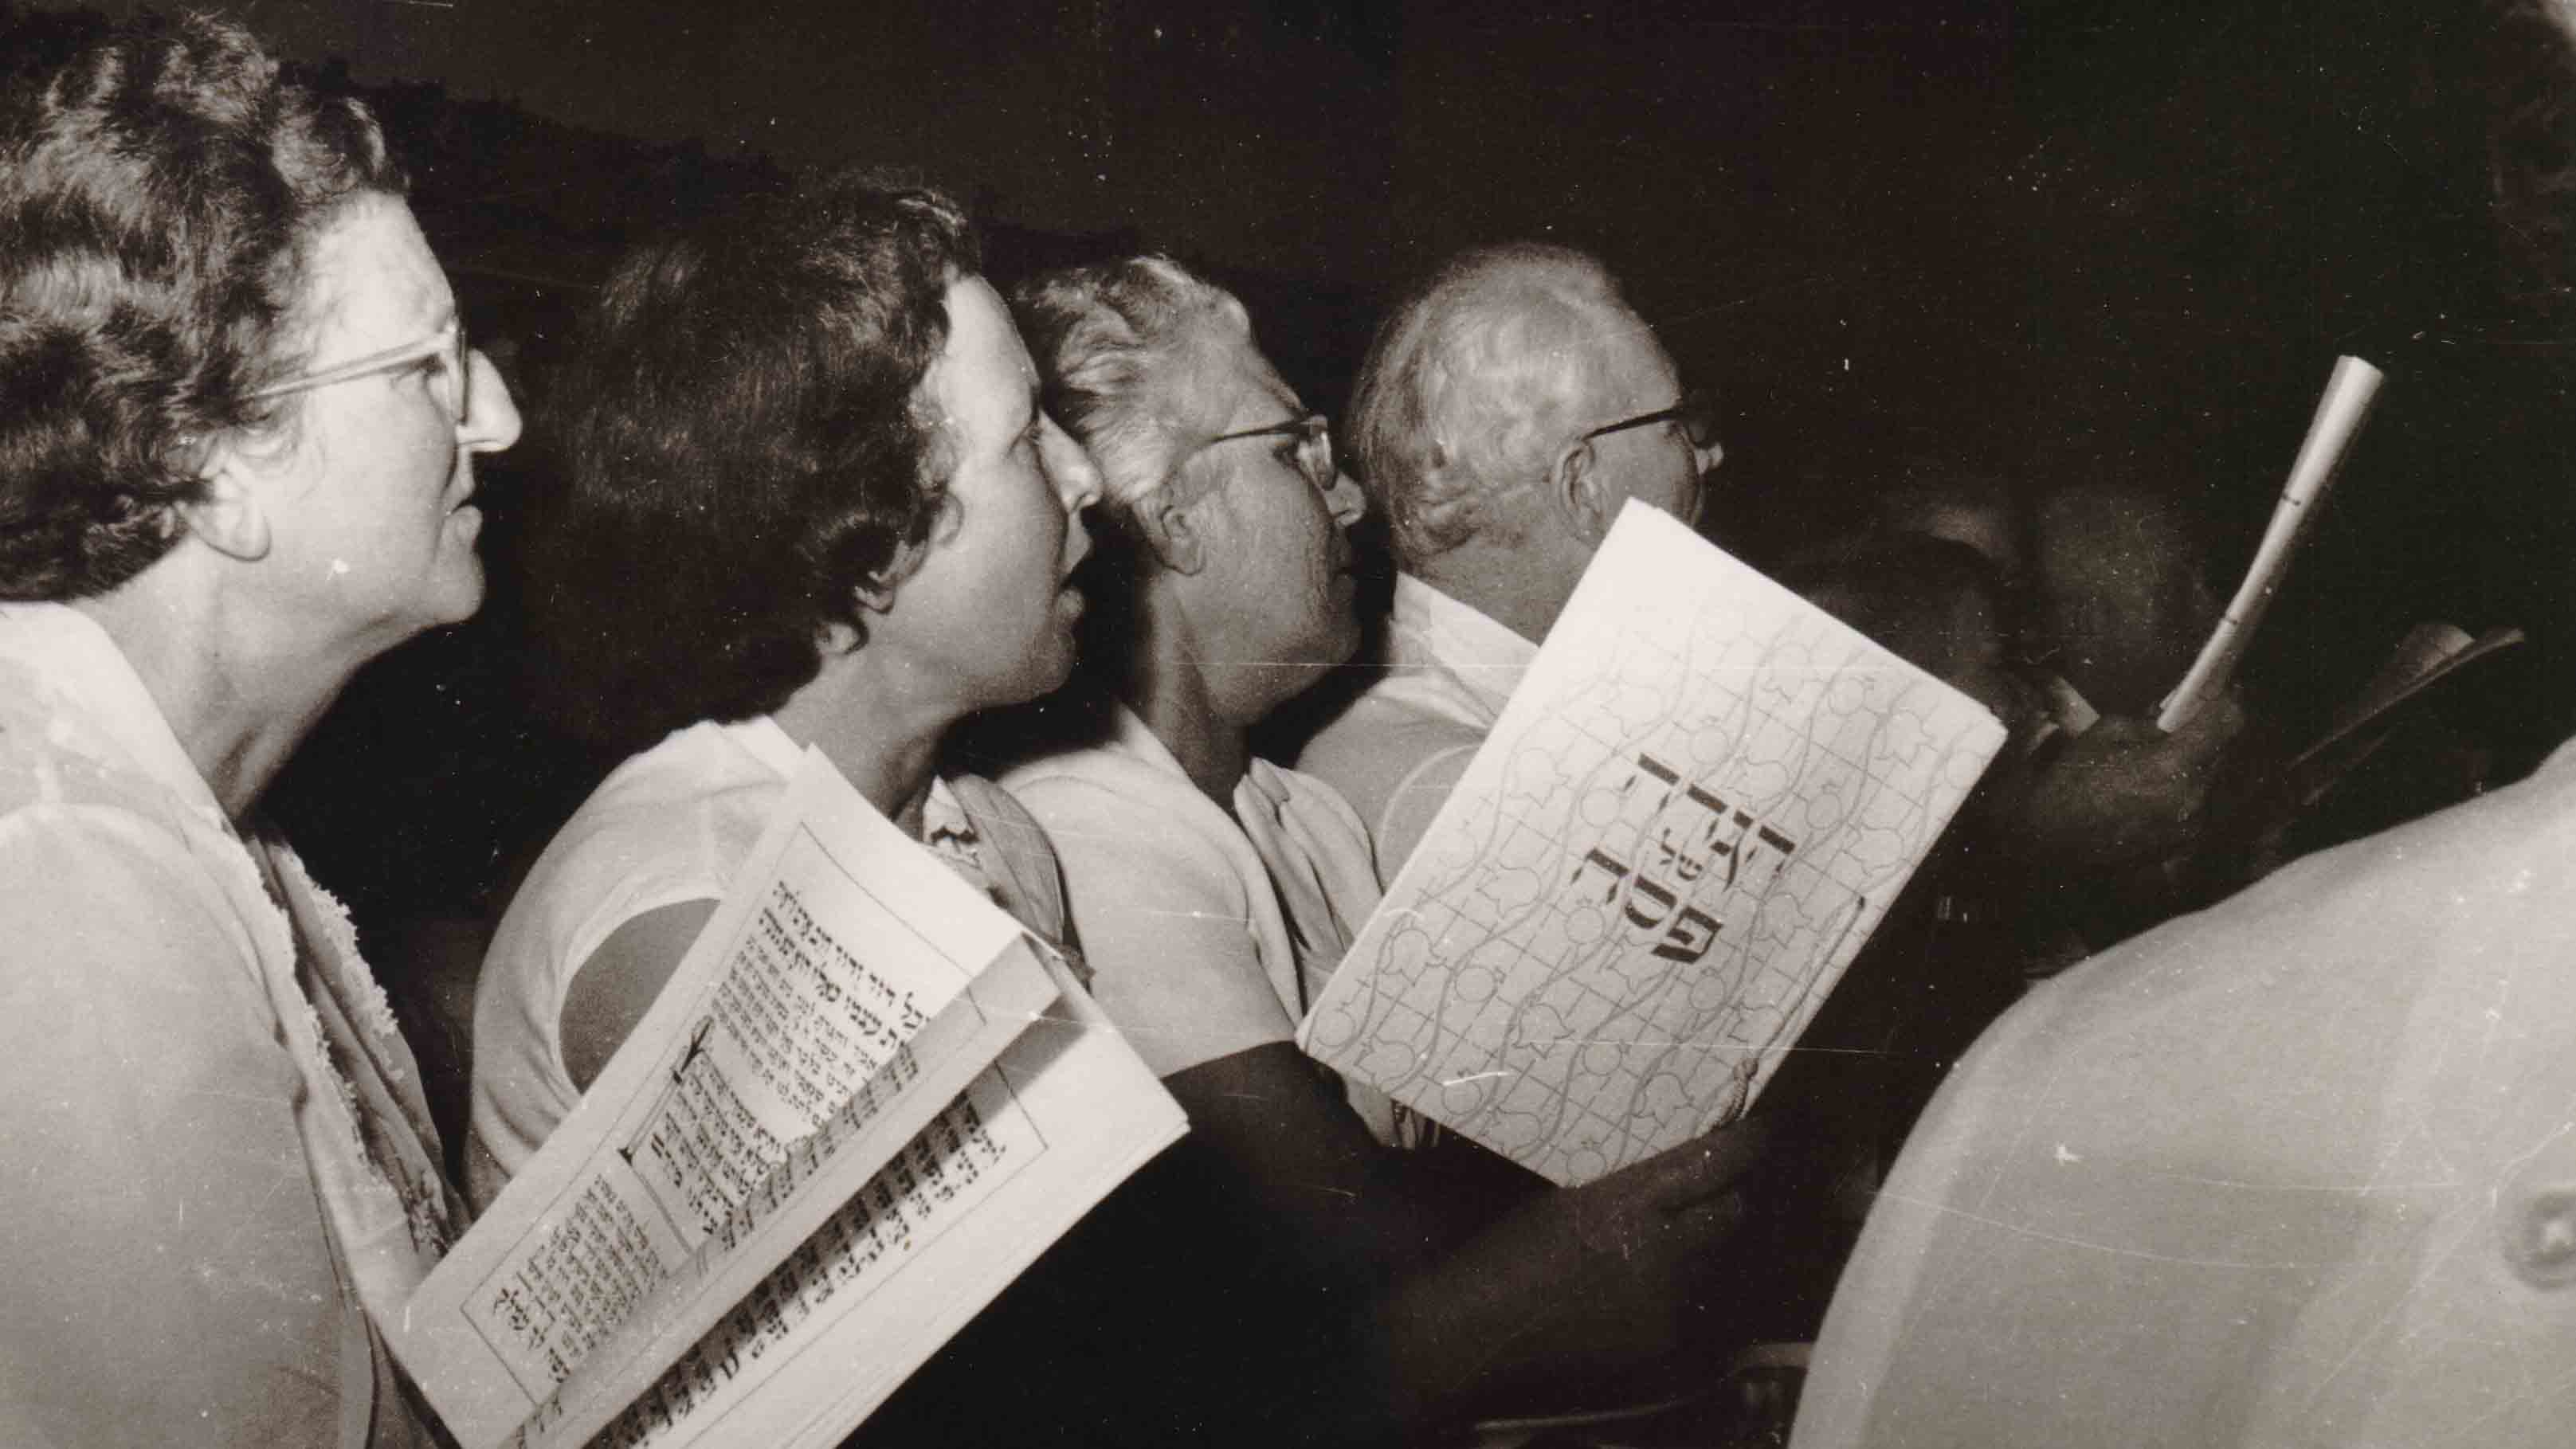 סדר פסח ביגור, 1962. המשתתפים קוראים בהגדת יגור מ-1958, אותה כתב ואייר שלמה קנטור (צילום: ארכיון קיבוץ יגור)